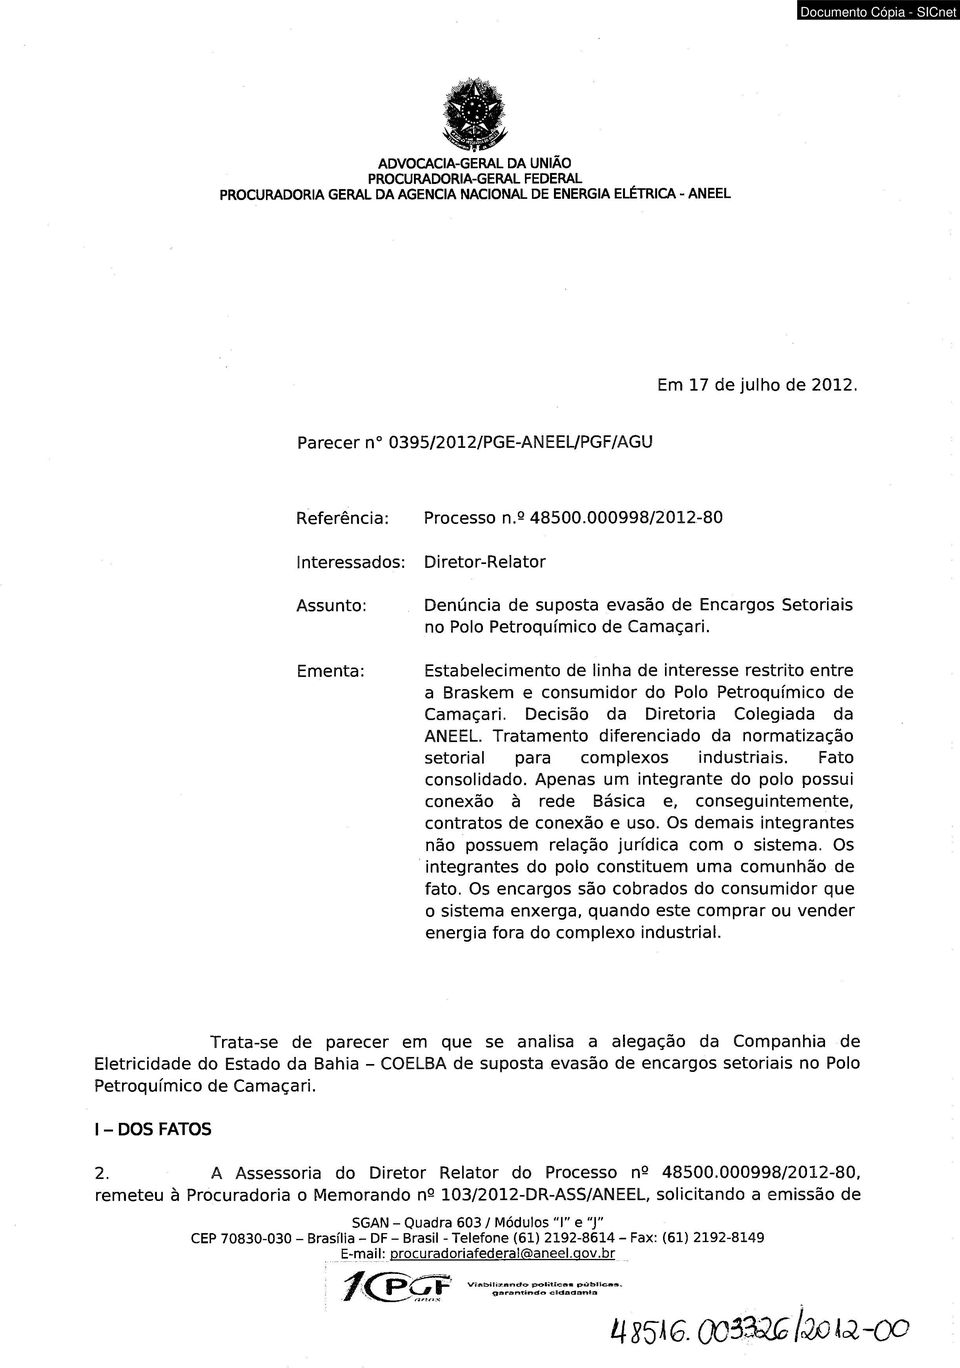 000998/2012-80 Interessados: Assunto: Ementa: Diretor-Relator Denúncia de suposta evasão de Encargos Setoriais no Polo Petroquímico de Camaçari.